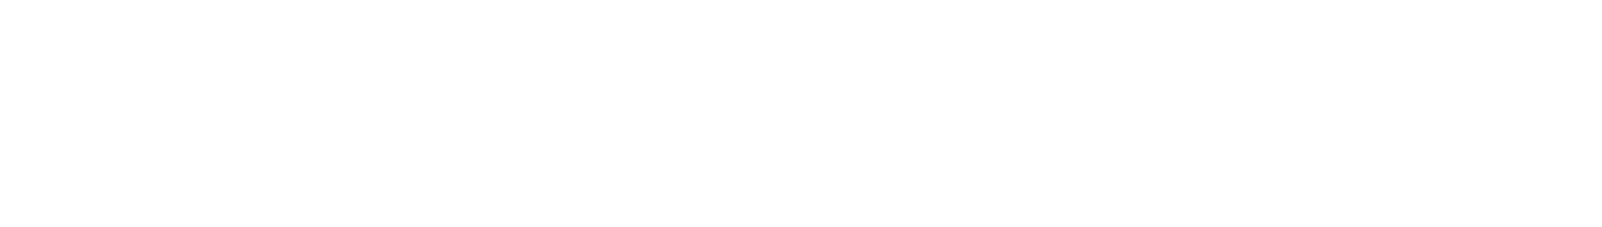 Peab Logo groß für dunkle Hintergründe (transparentes PNG)